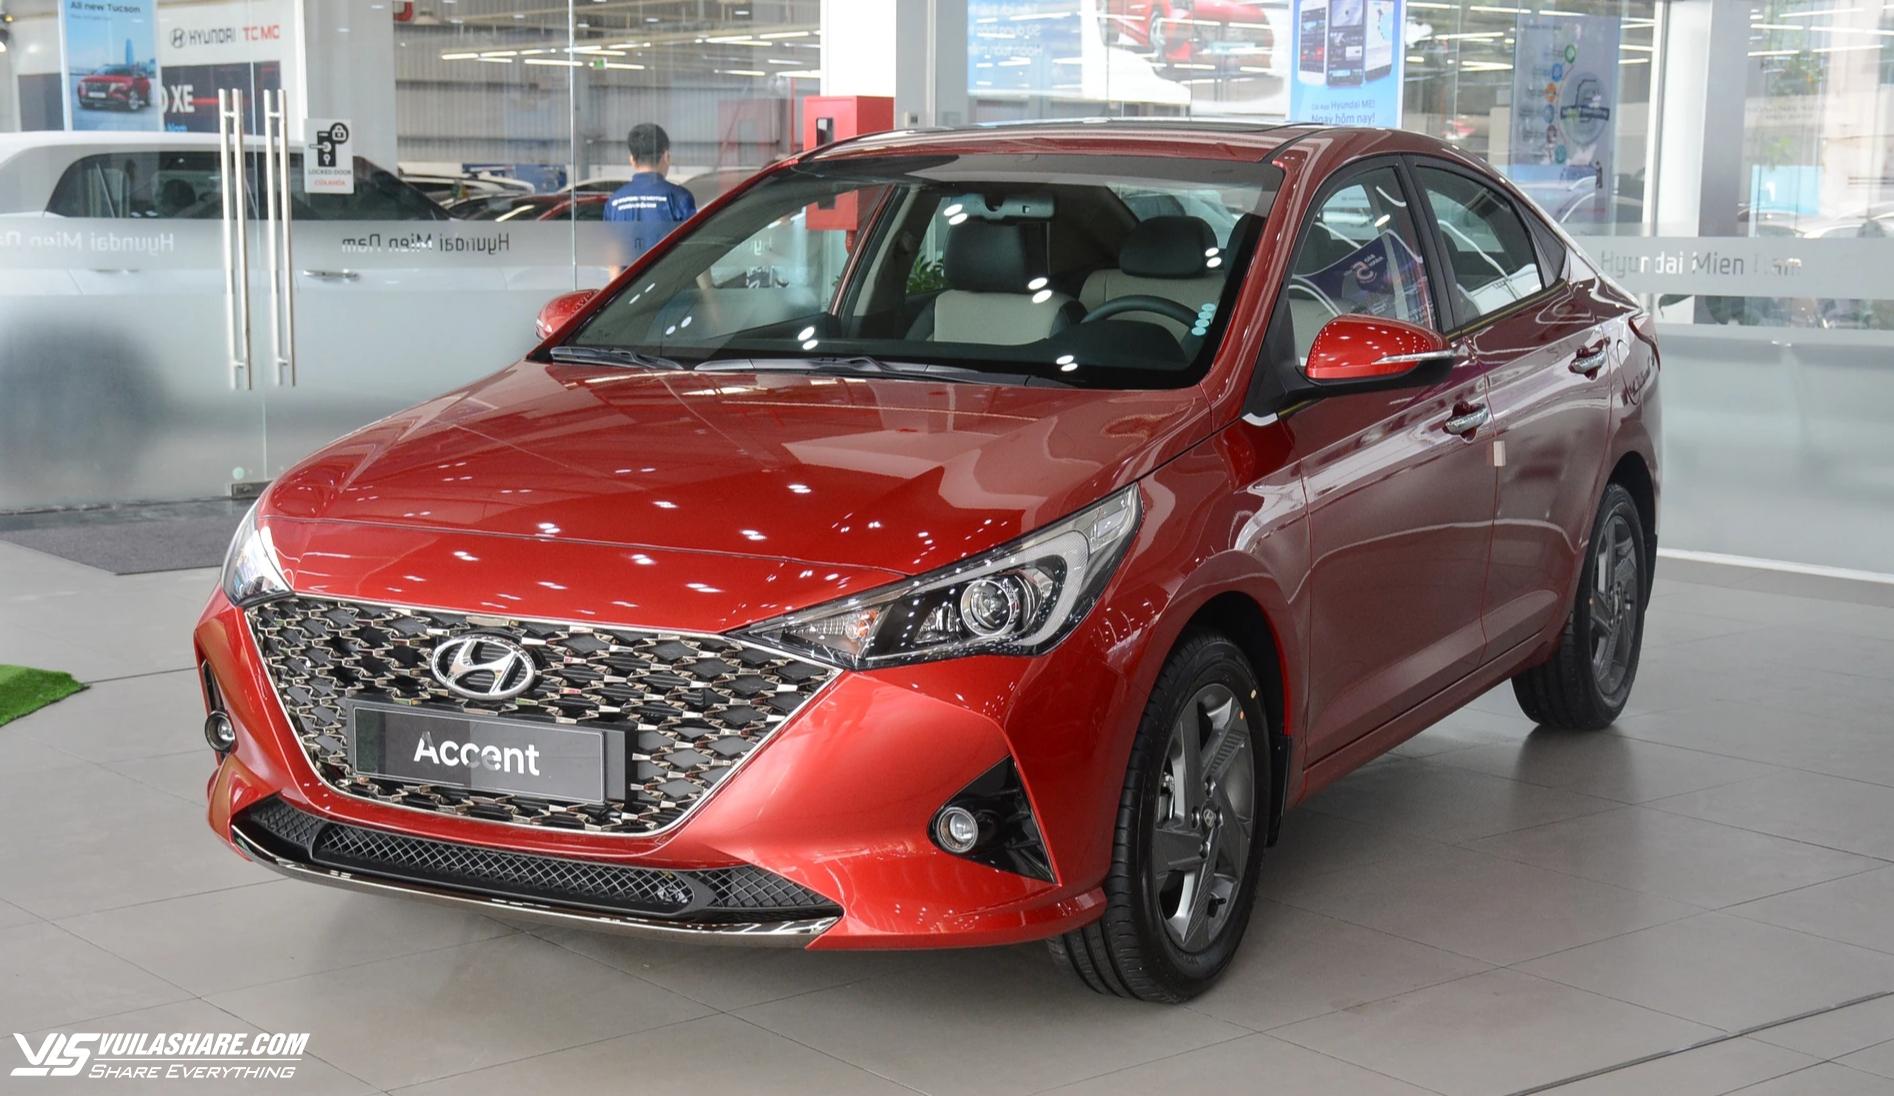 Giảm giá xả hàng, Hyundai Accent hút khách nhất sedan hạng B tại Việt Nam- Ảnh 2.